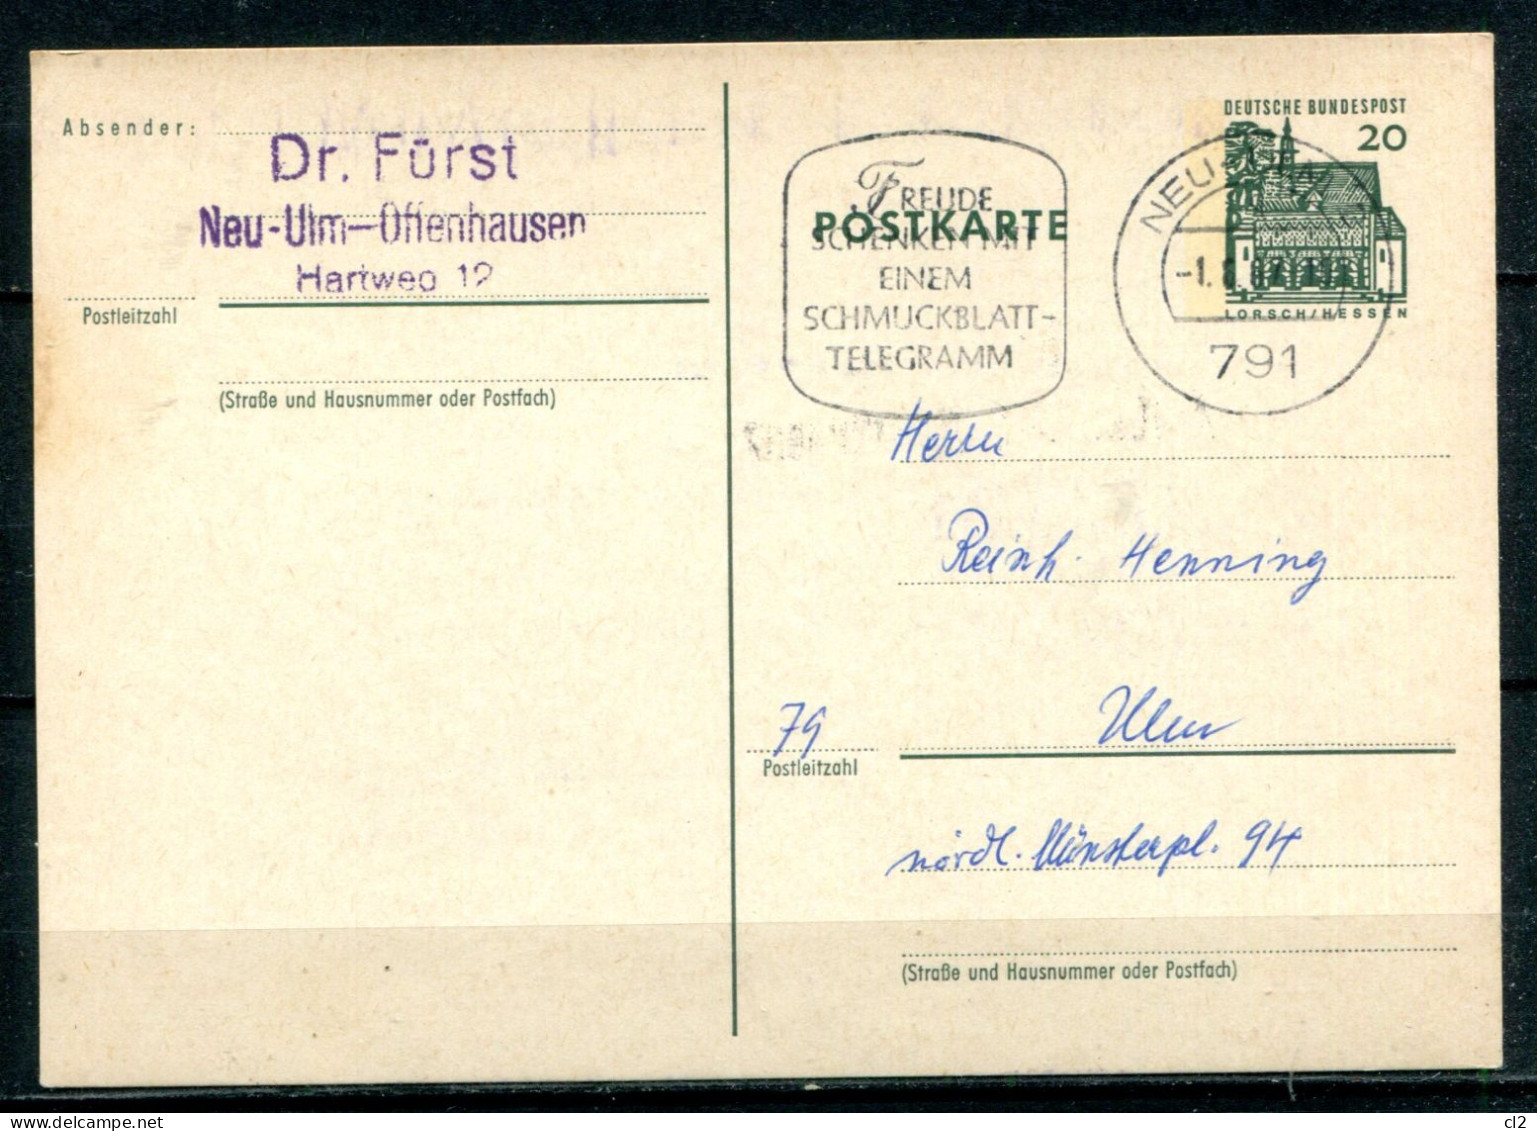 REPUBLIQUE FEDERALE ALLEMANDE - Michel P87 (Freude Schenken Mit Einem Schmuckblatt-Telegramm) - Illustrated Postcards - Used